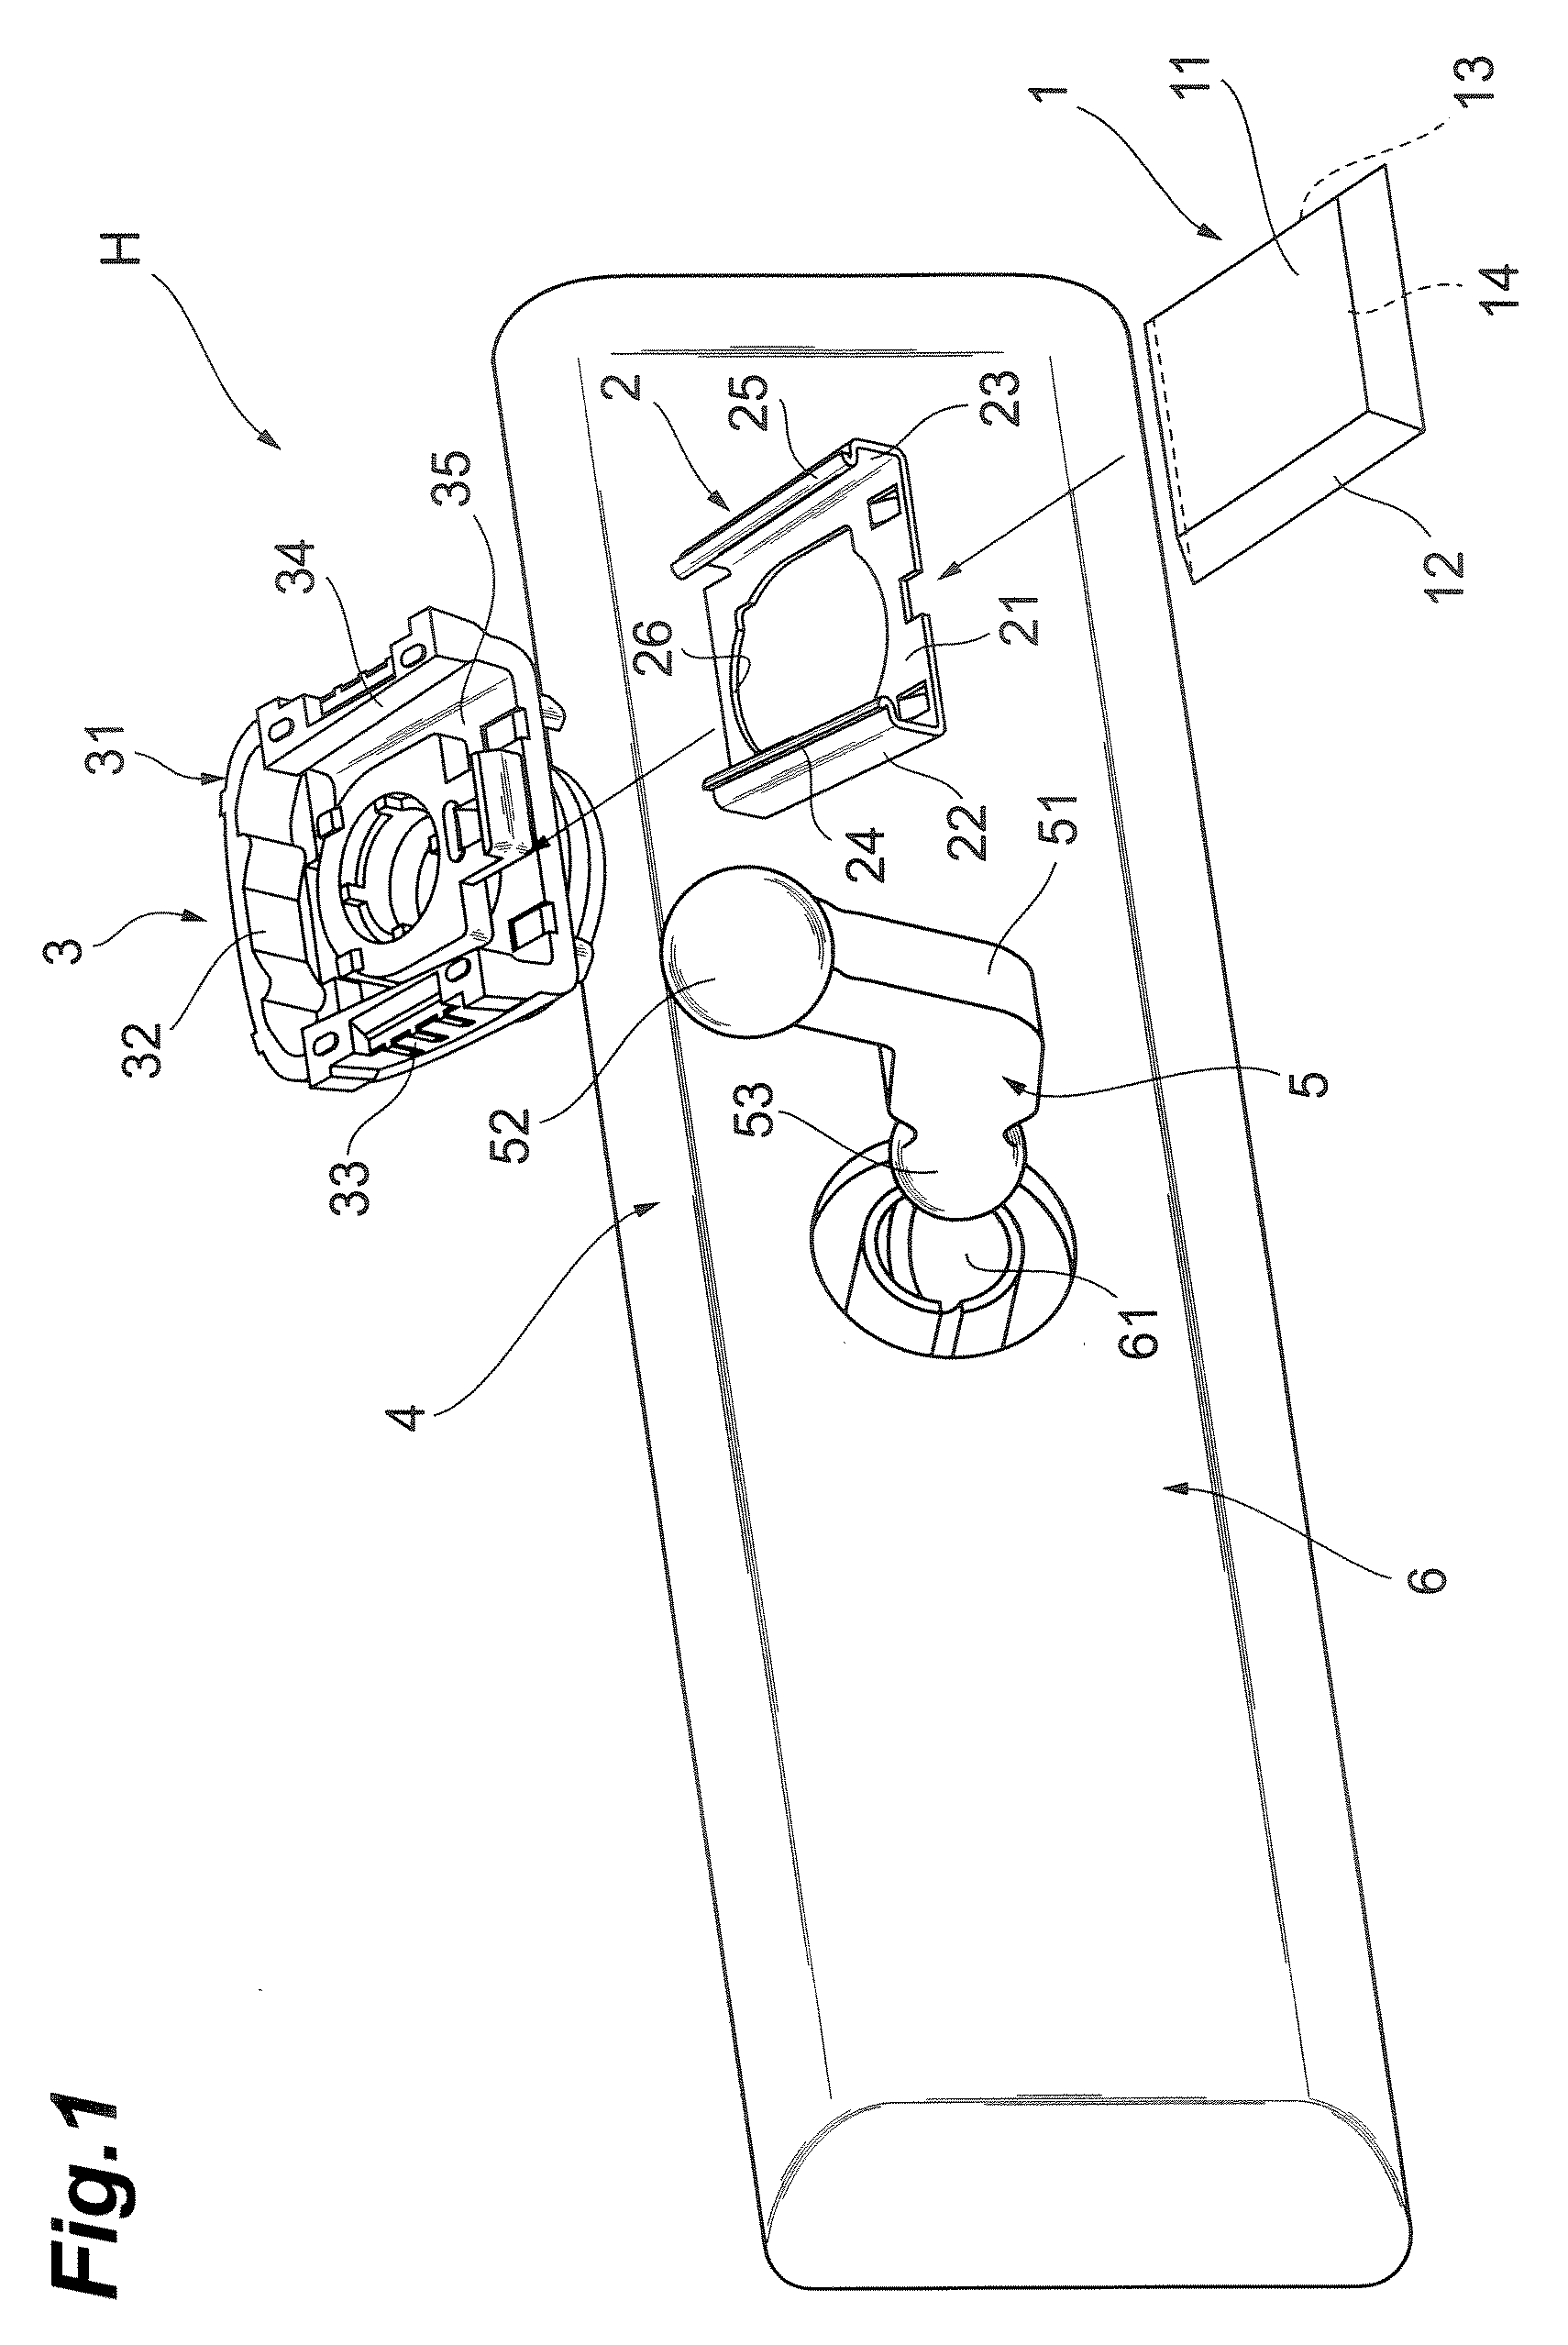 Vehicle interior accessory retainer